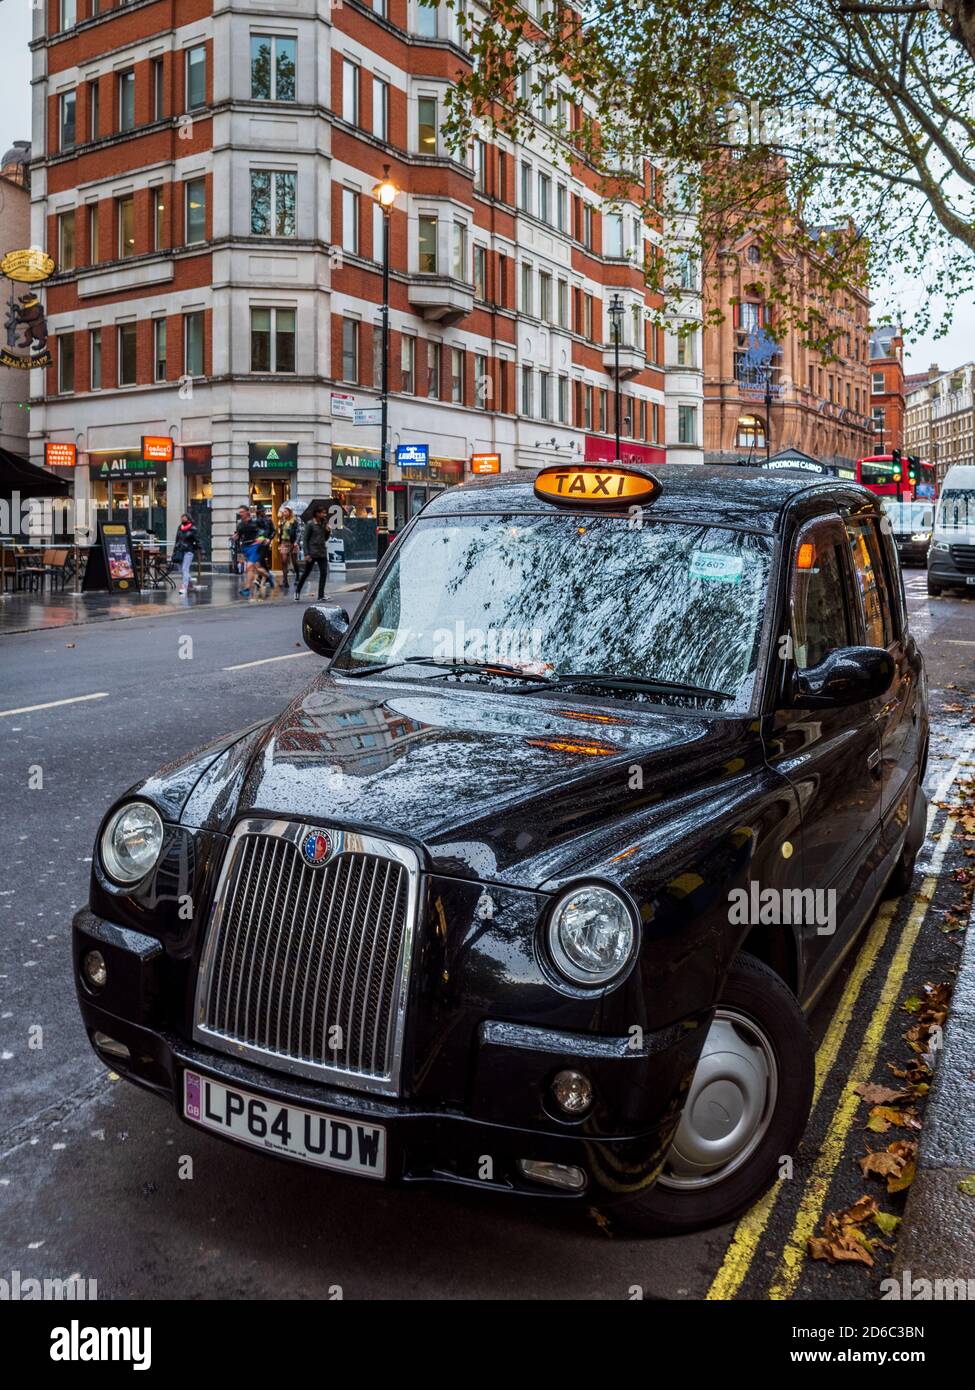 London Taxi in attesa per i clienti, con i cartelli di noleggio su. London Black Cab in attesa dei passeggeri. Foto Stock